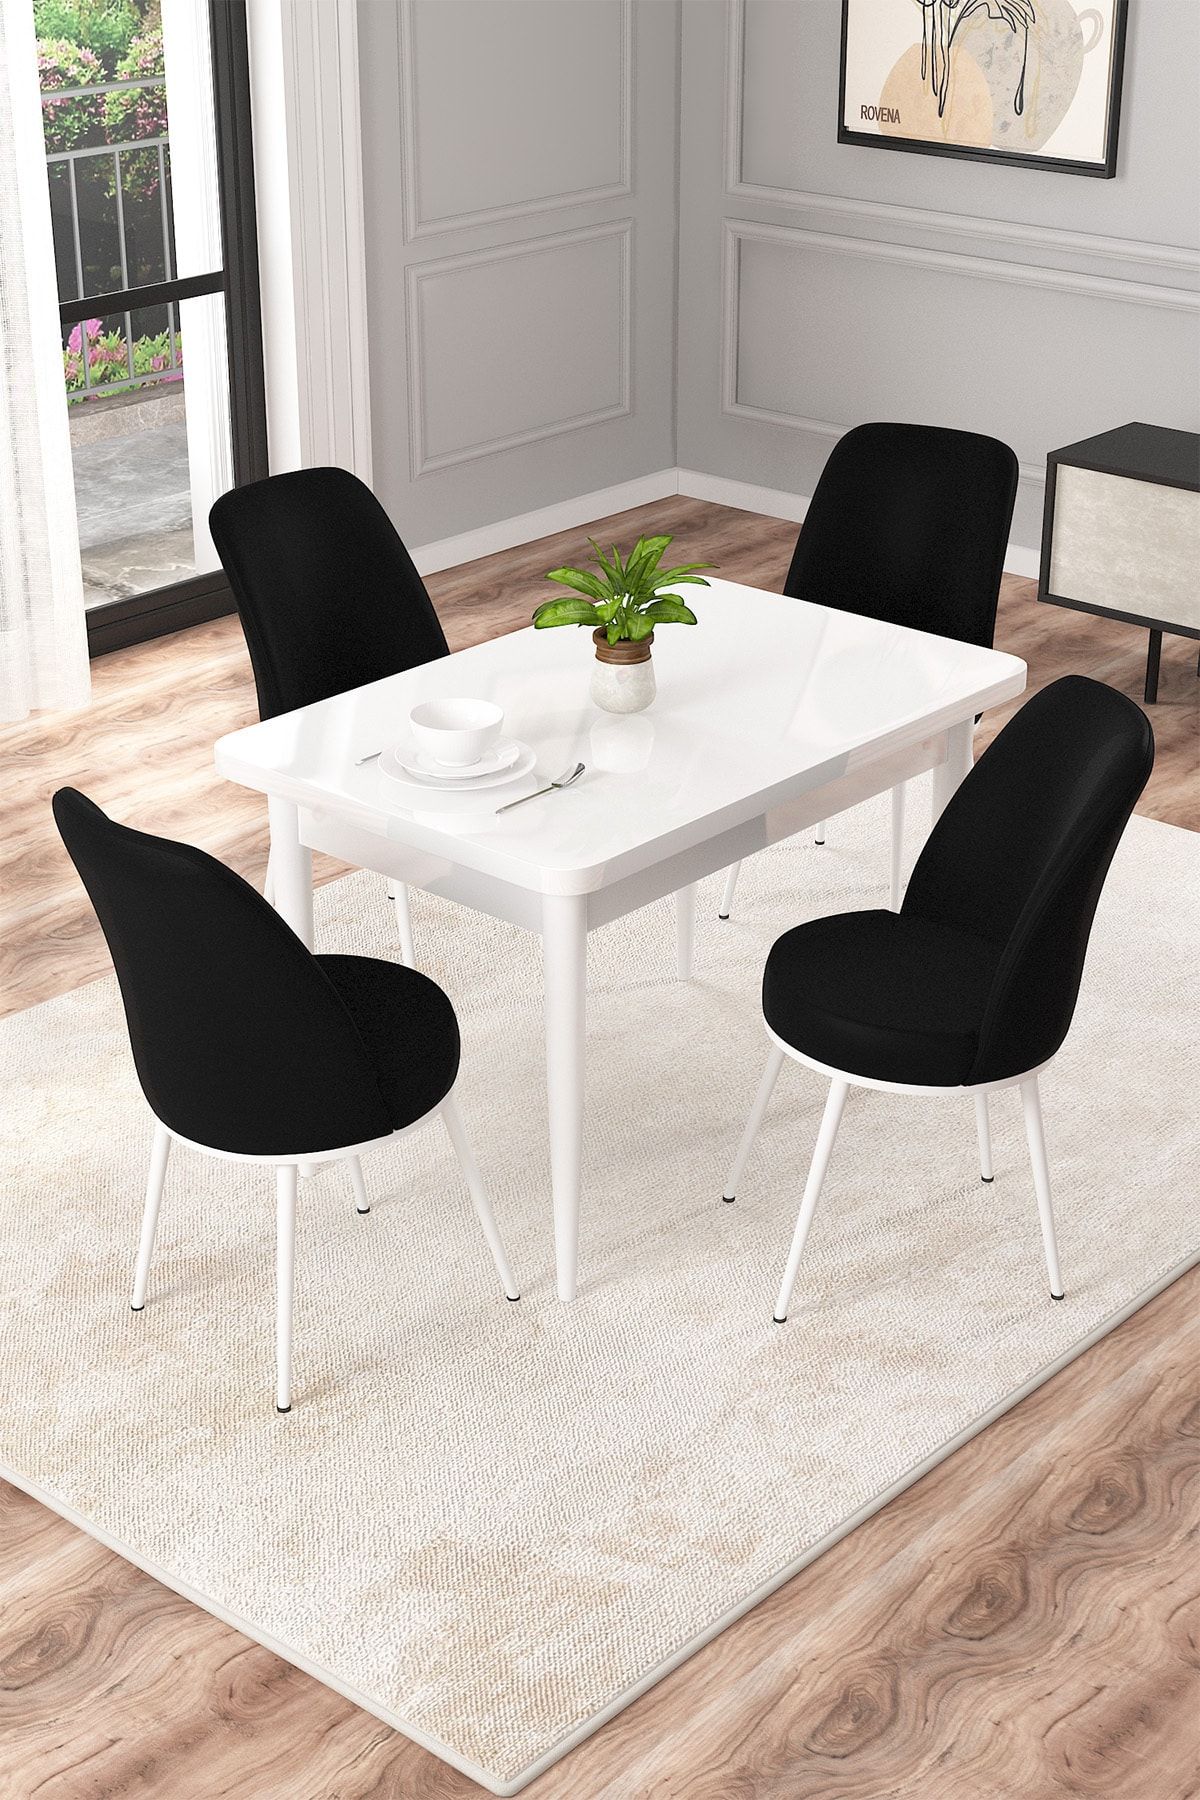 Rovena Duru Beyaz 70x110 Mdf Sabit Mutfak Masası Takımı 4 Adet Sandalye